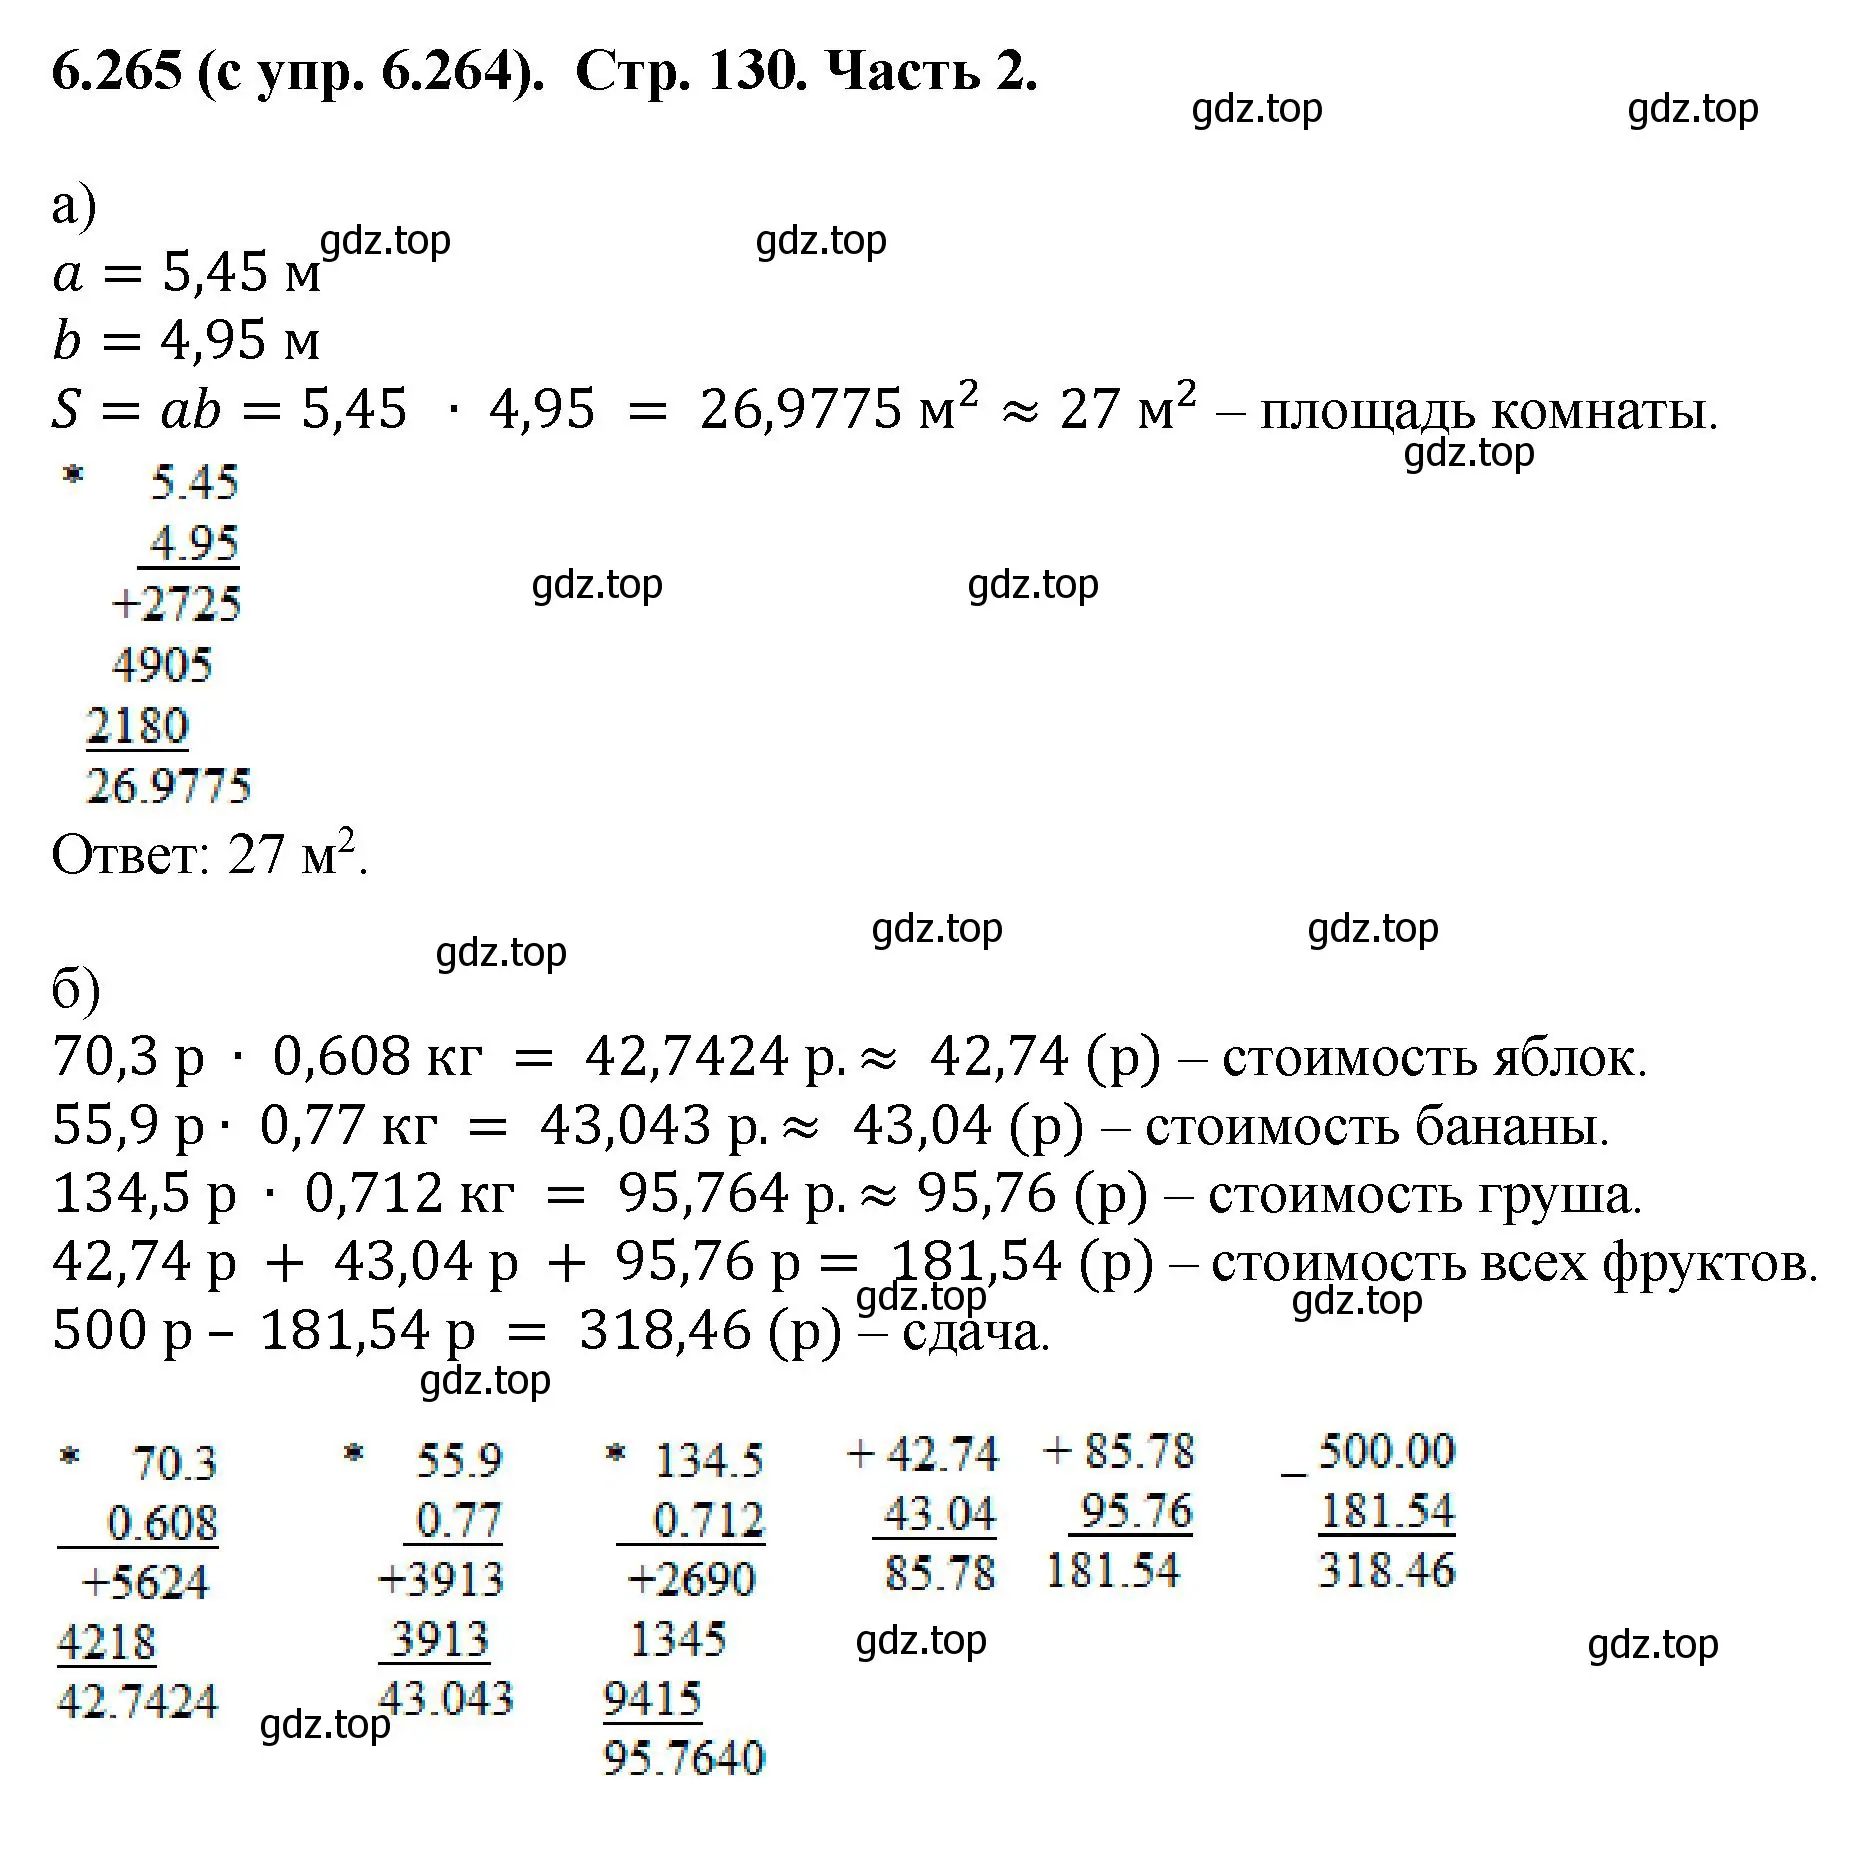 Решение номер 6.265 (страница 130) гдз по математике 5 класс Виленкин, Жохов, учебник 2 часть